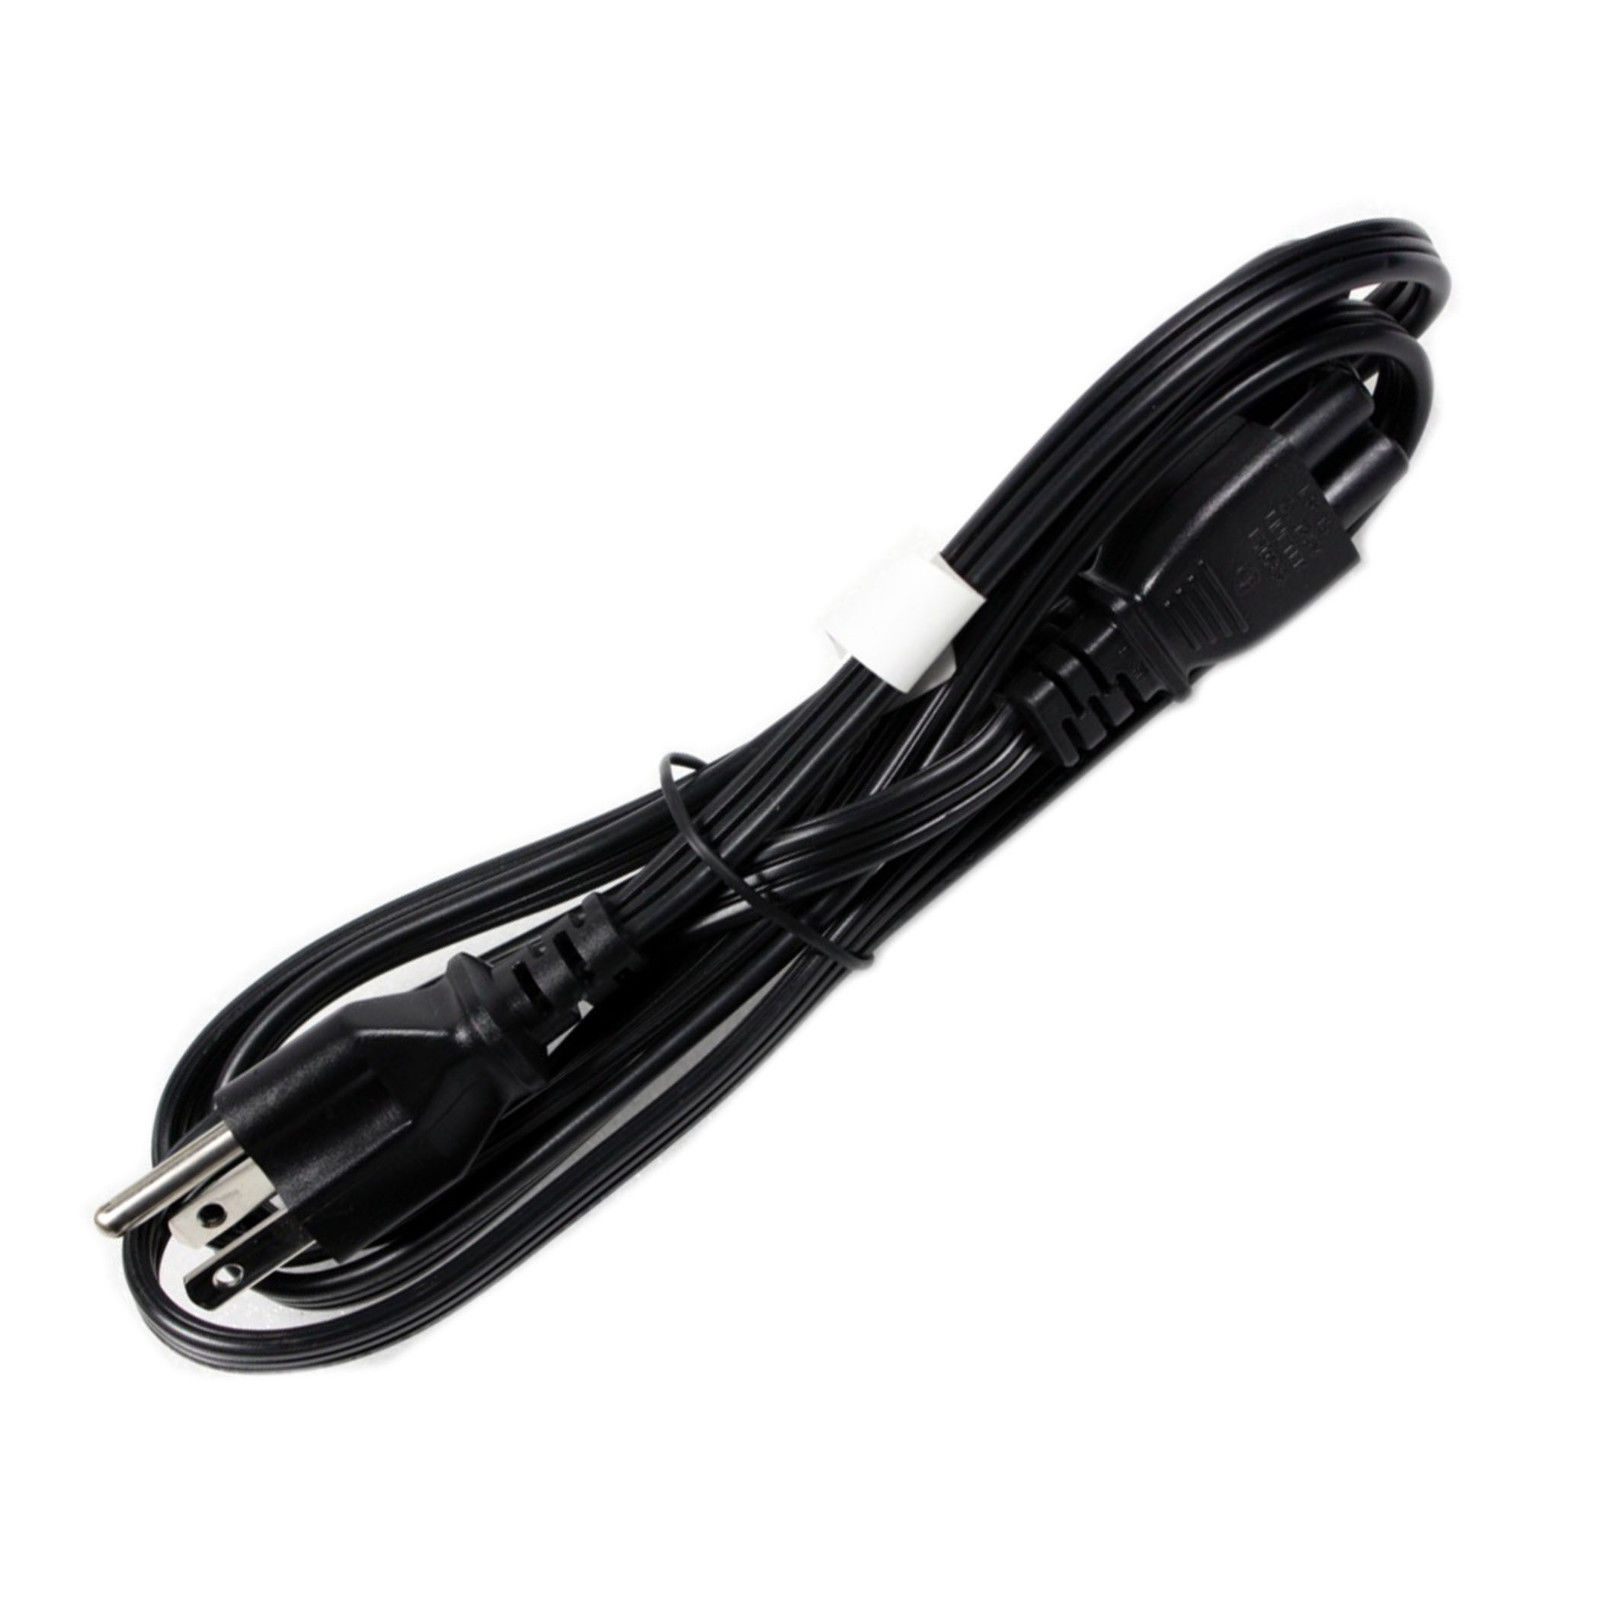 New Dell Linetek 6 Feet Black 125V Power Cable - E70782. 125V - 7A